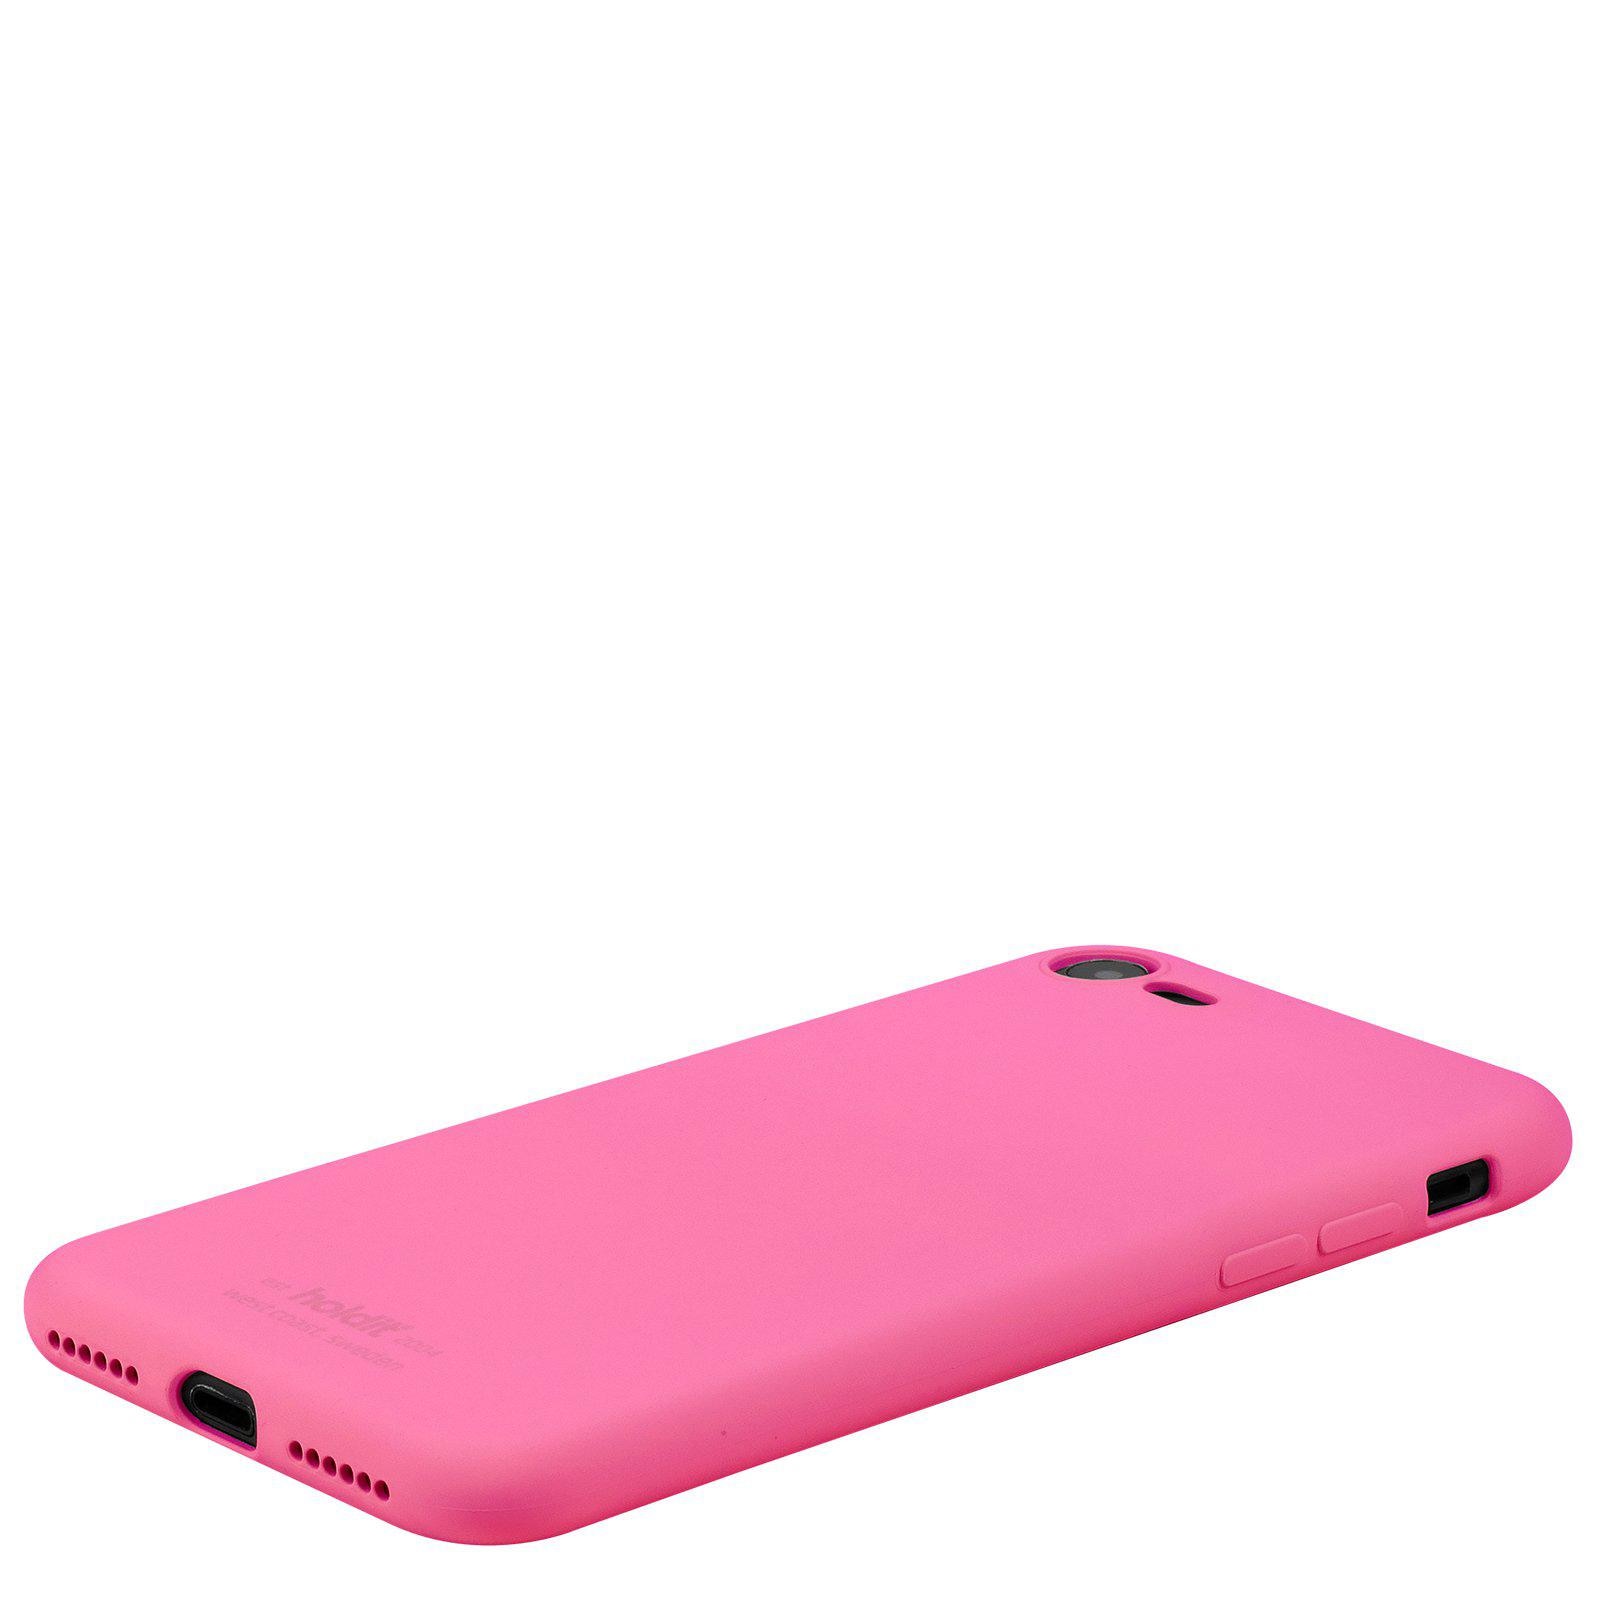 Silikonhülle iPhone 7 Bright Pink